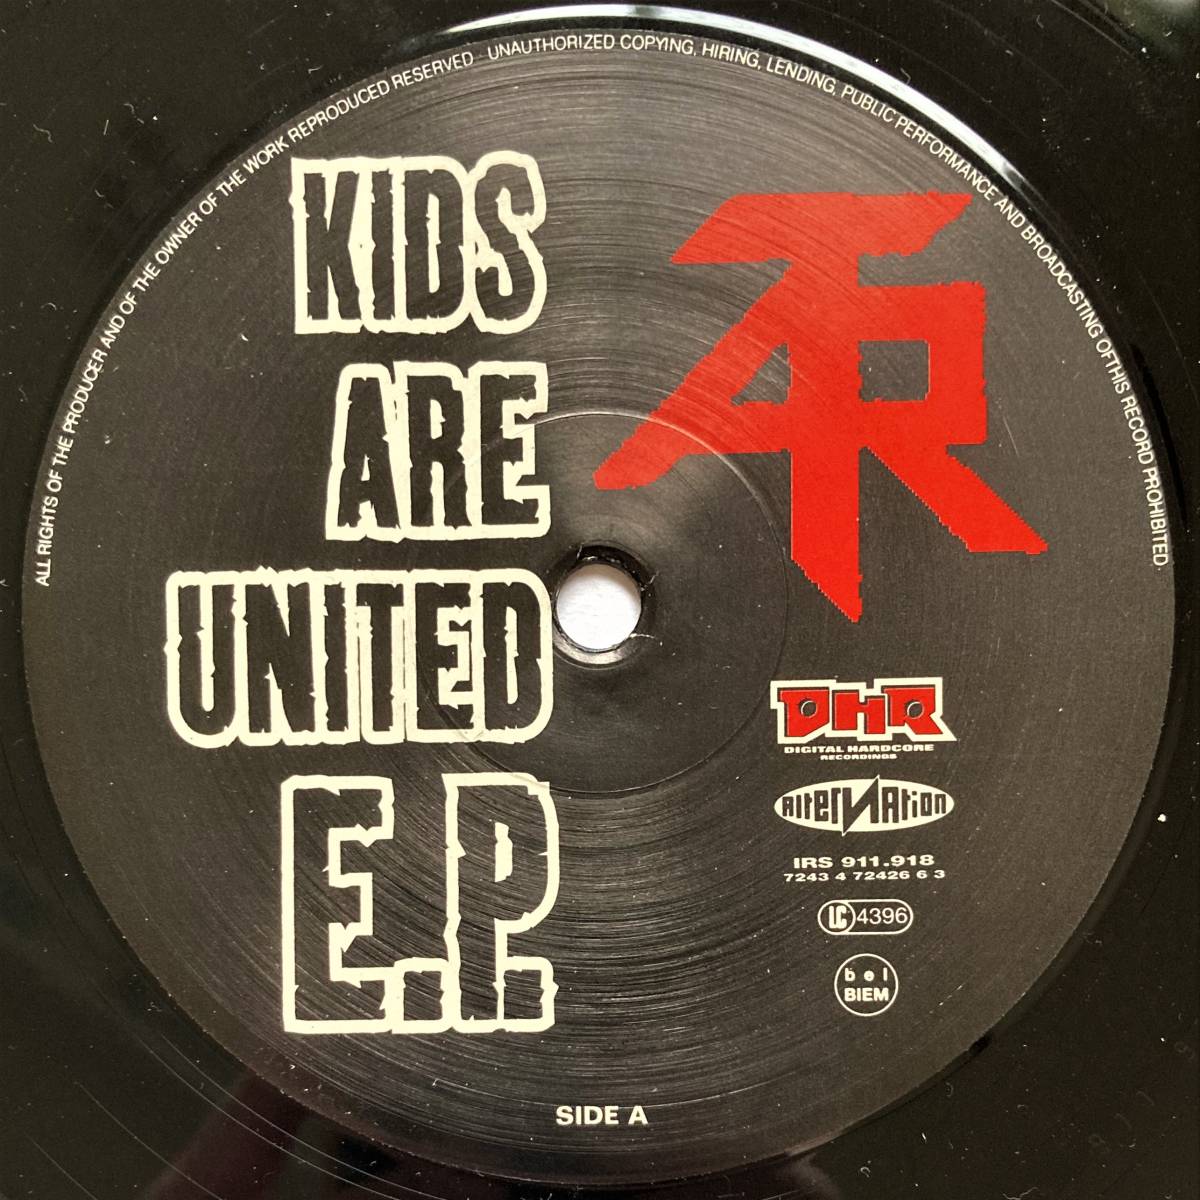 レア!!【名曲】Atari Teenage Riot / Kids Are United E.P. ■1995年 ■DHR（Digital Hardcore Recordings）■Alec Empire ■Sham 69_画像3